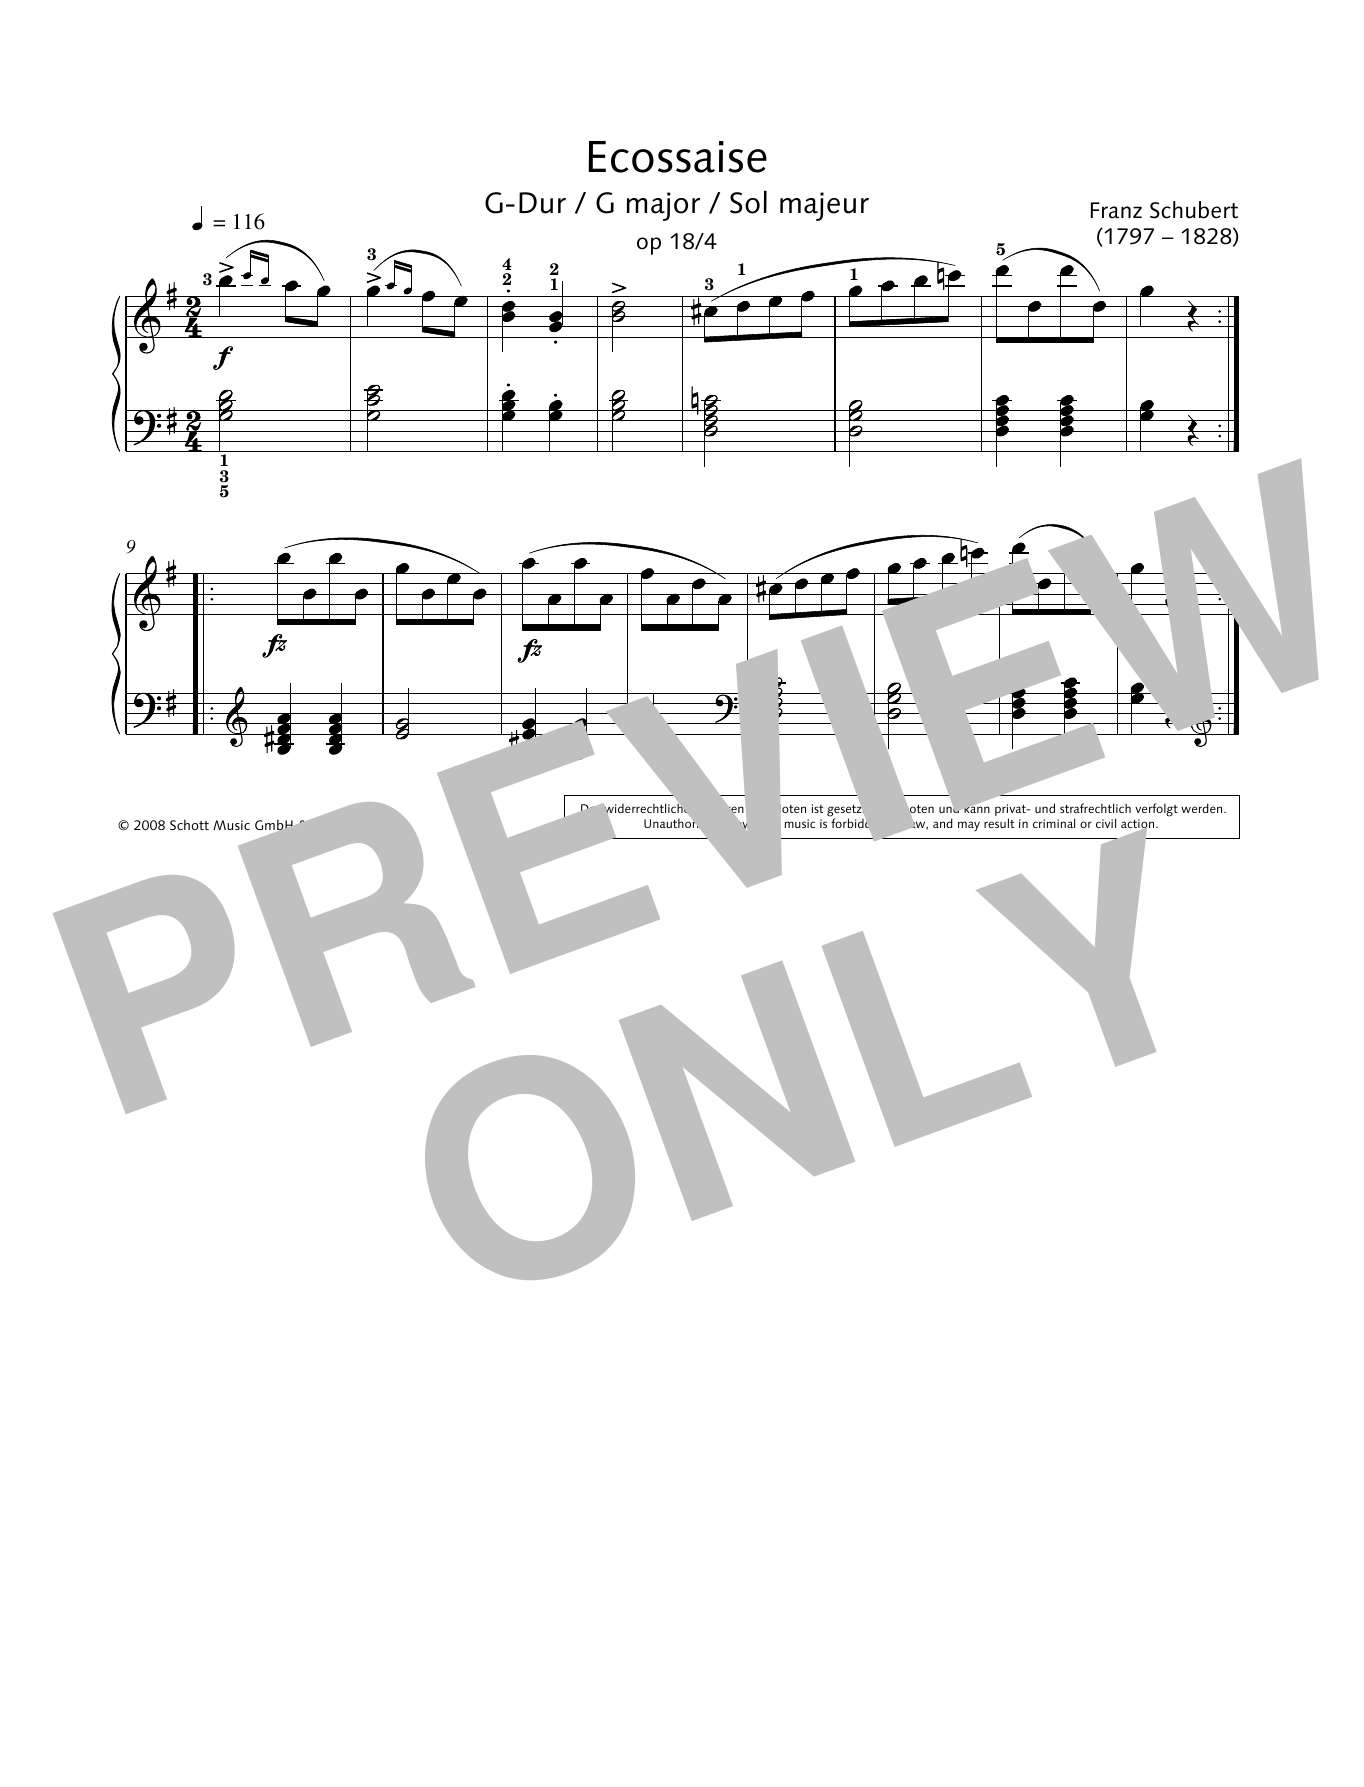 Download Franz Schubert Ecossaise in G major Sheet Music